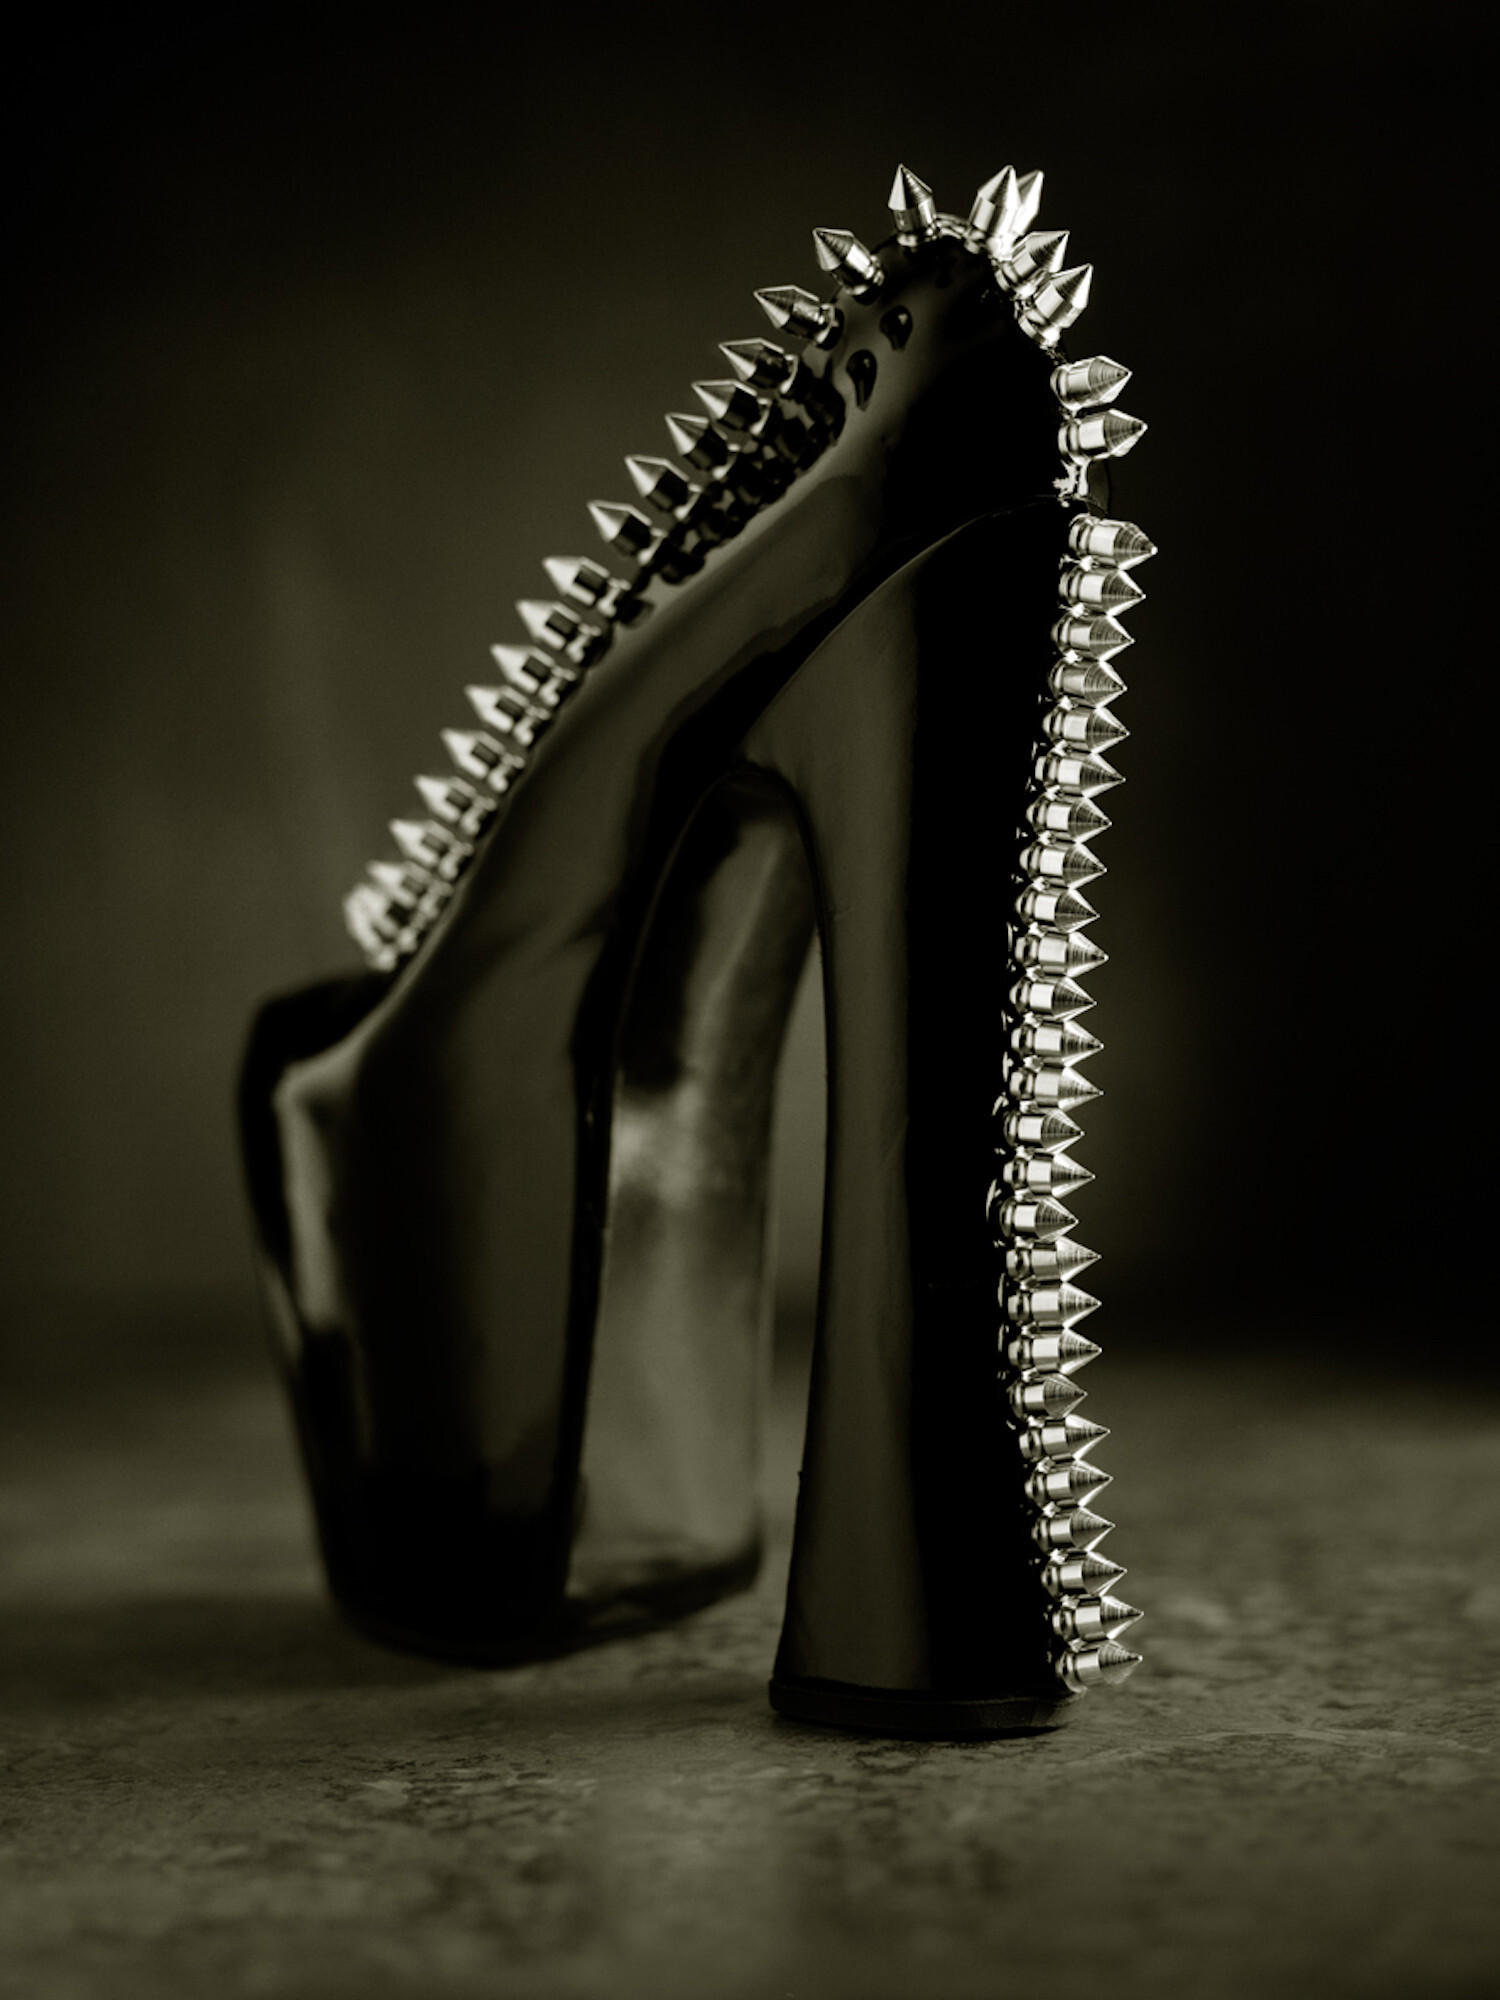 Обувь Вивьен Вествуд, Нью-Йорк, 1993 год. Фотограф Альберт Уотсон